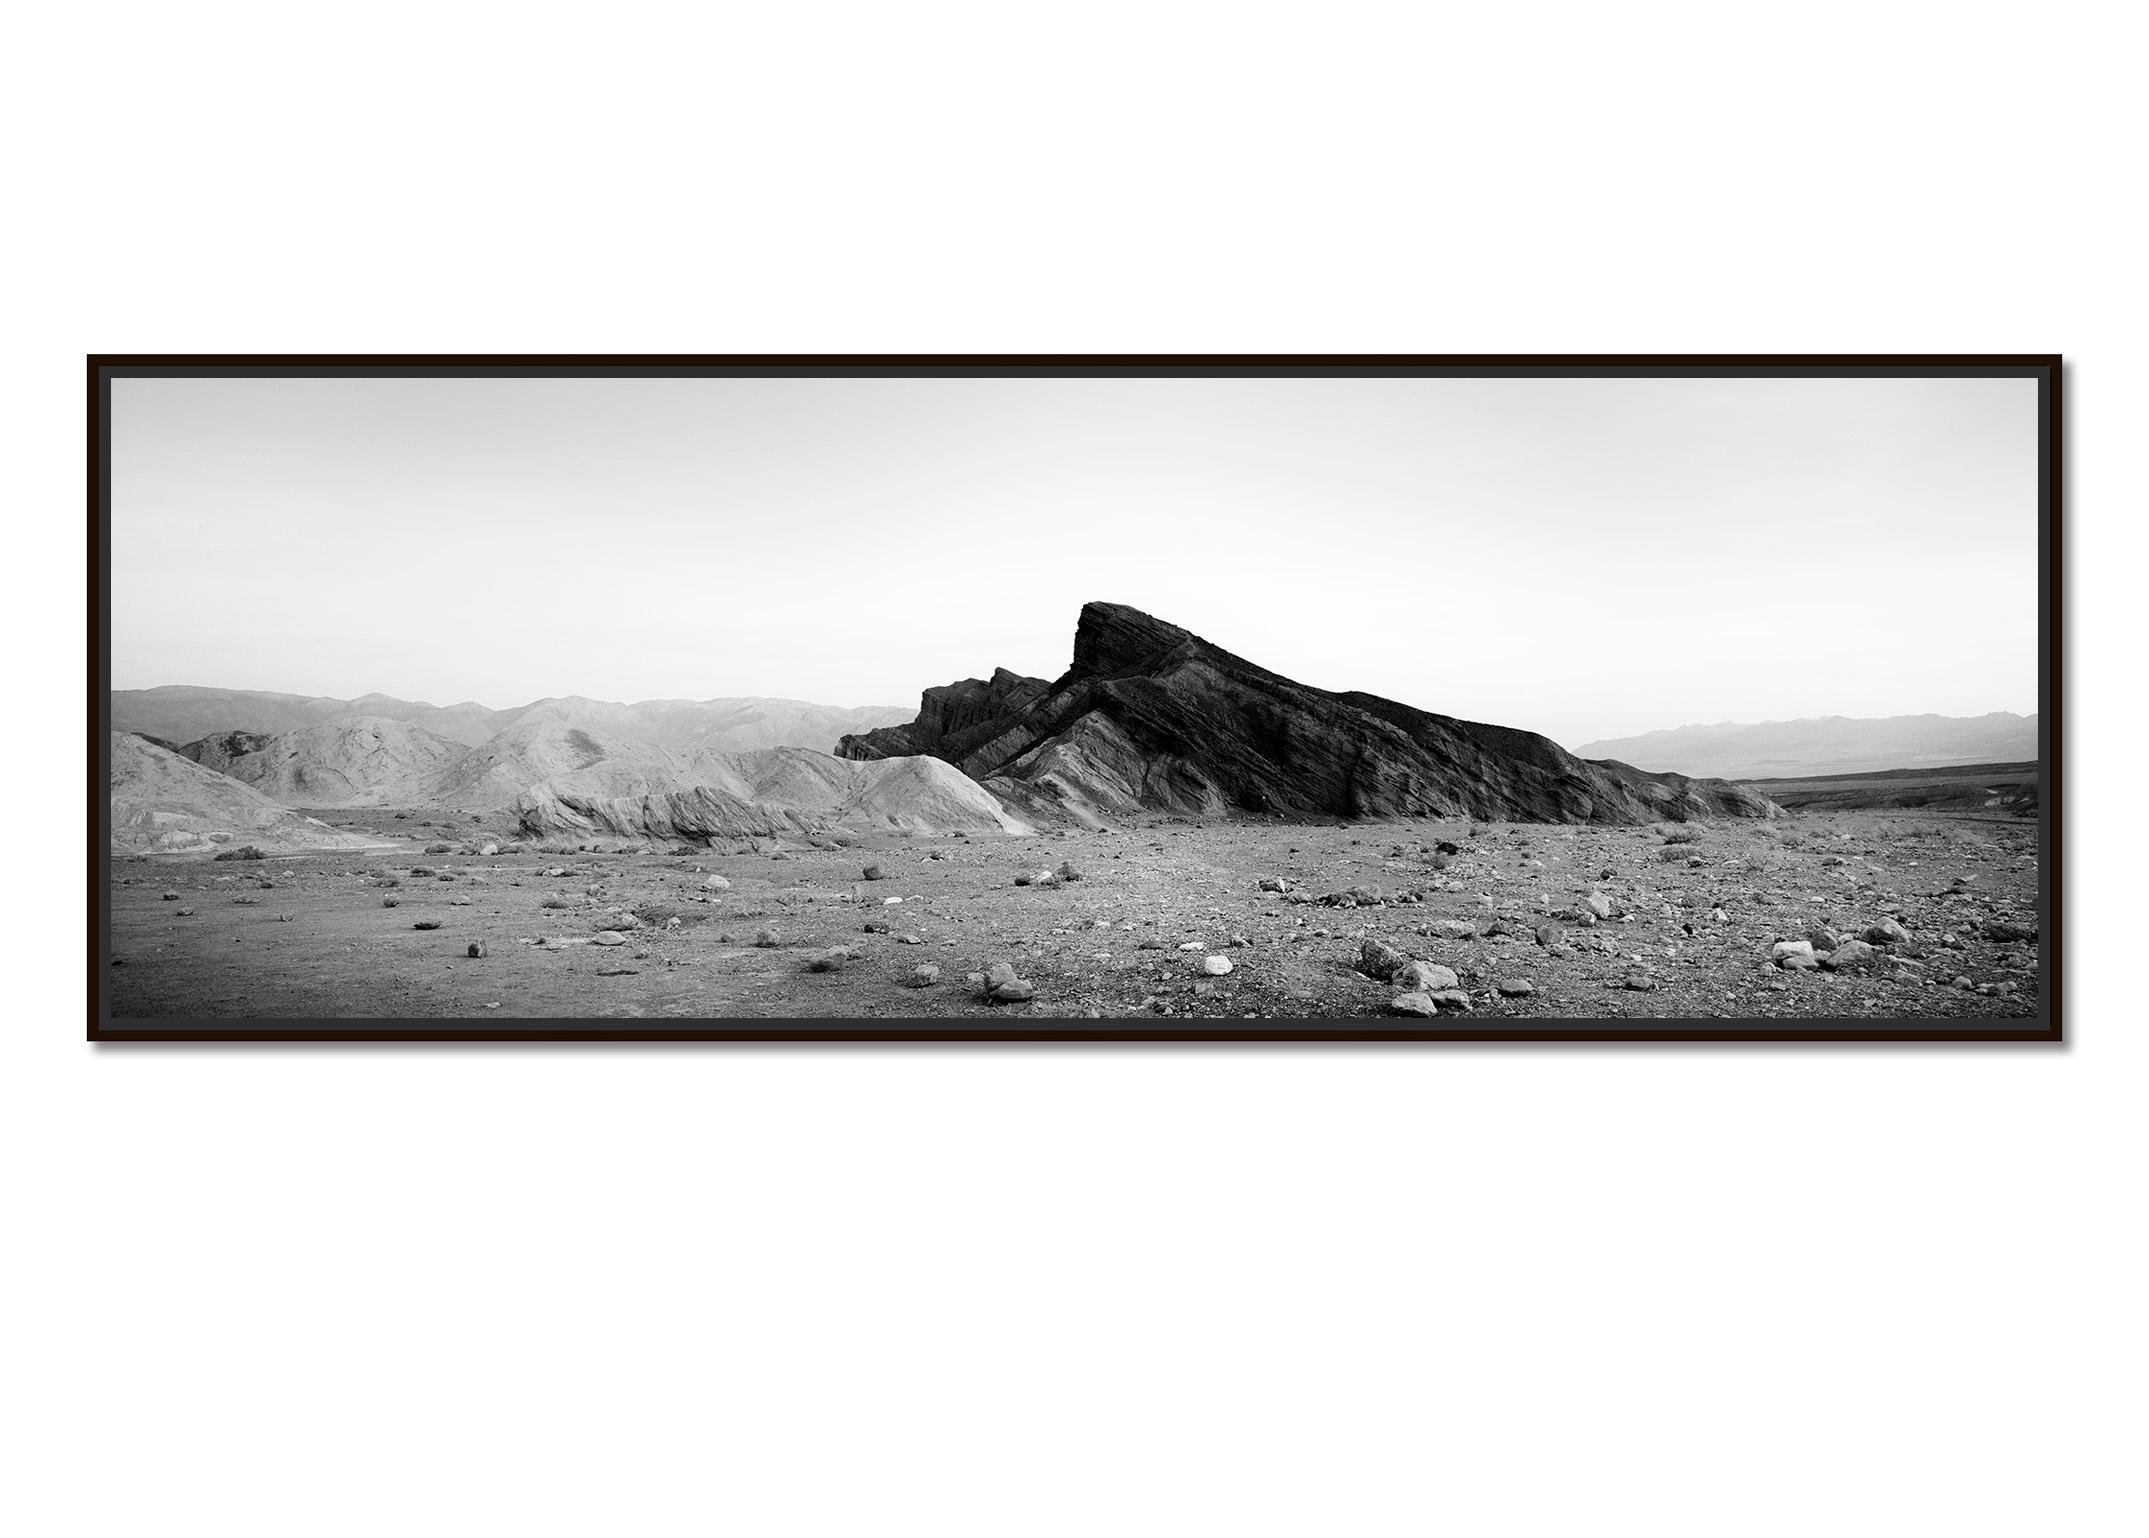 Black Rock, Berge, Death Valley, USA, schwarz-weiße Landschaftsfotografie – Photograph von Gerald Berghammer